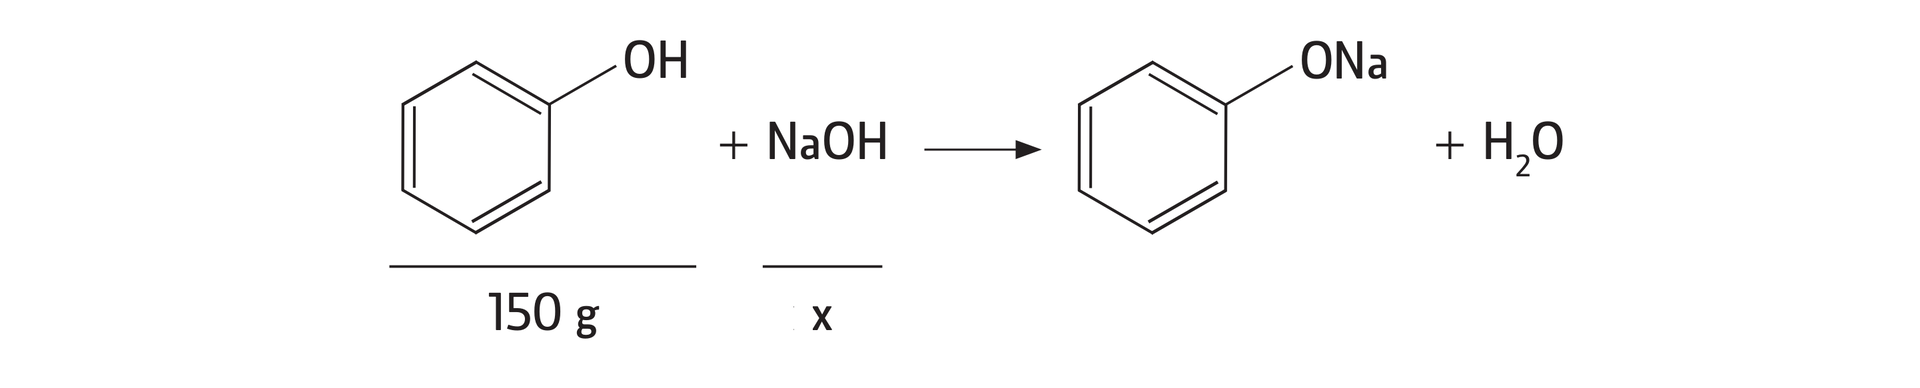 Równanie reakcji: jedna cząsteczka fenolu, pod nią zapisano 150 gramów, dodać jedna cząsteczka wodorotlenku sodu, pod nim znak x, daje jedną cząsteczkę fenolanu sodu dodać jedną cząsteczkę wody.  